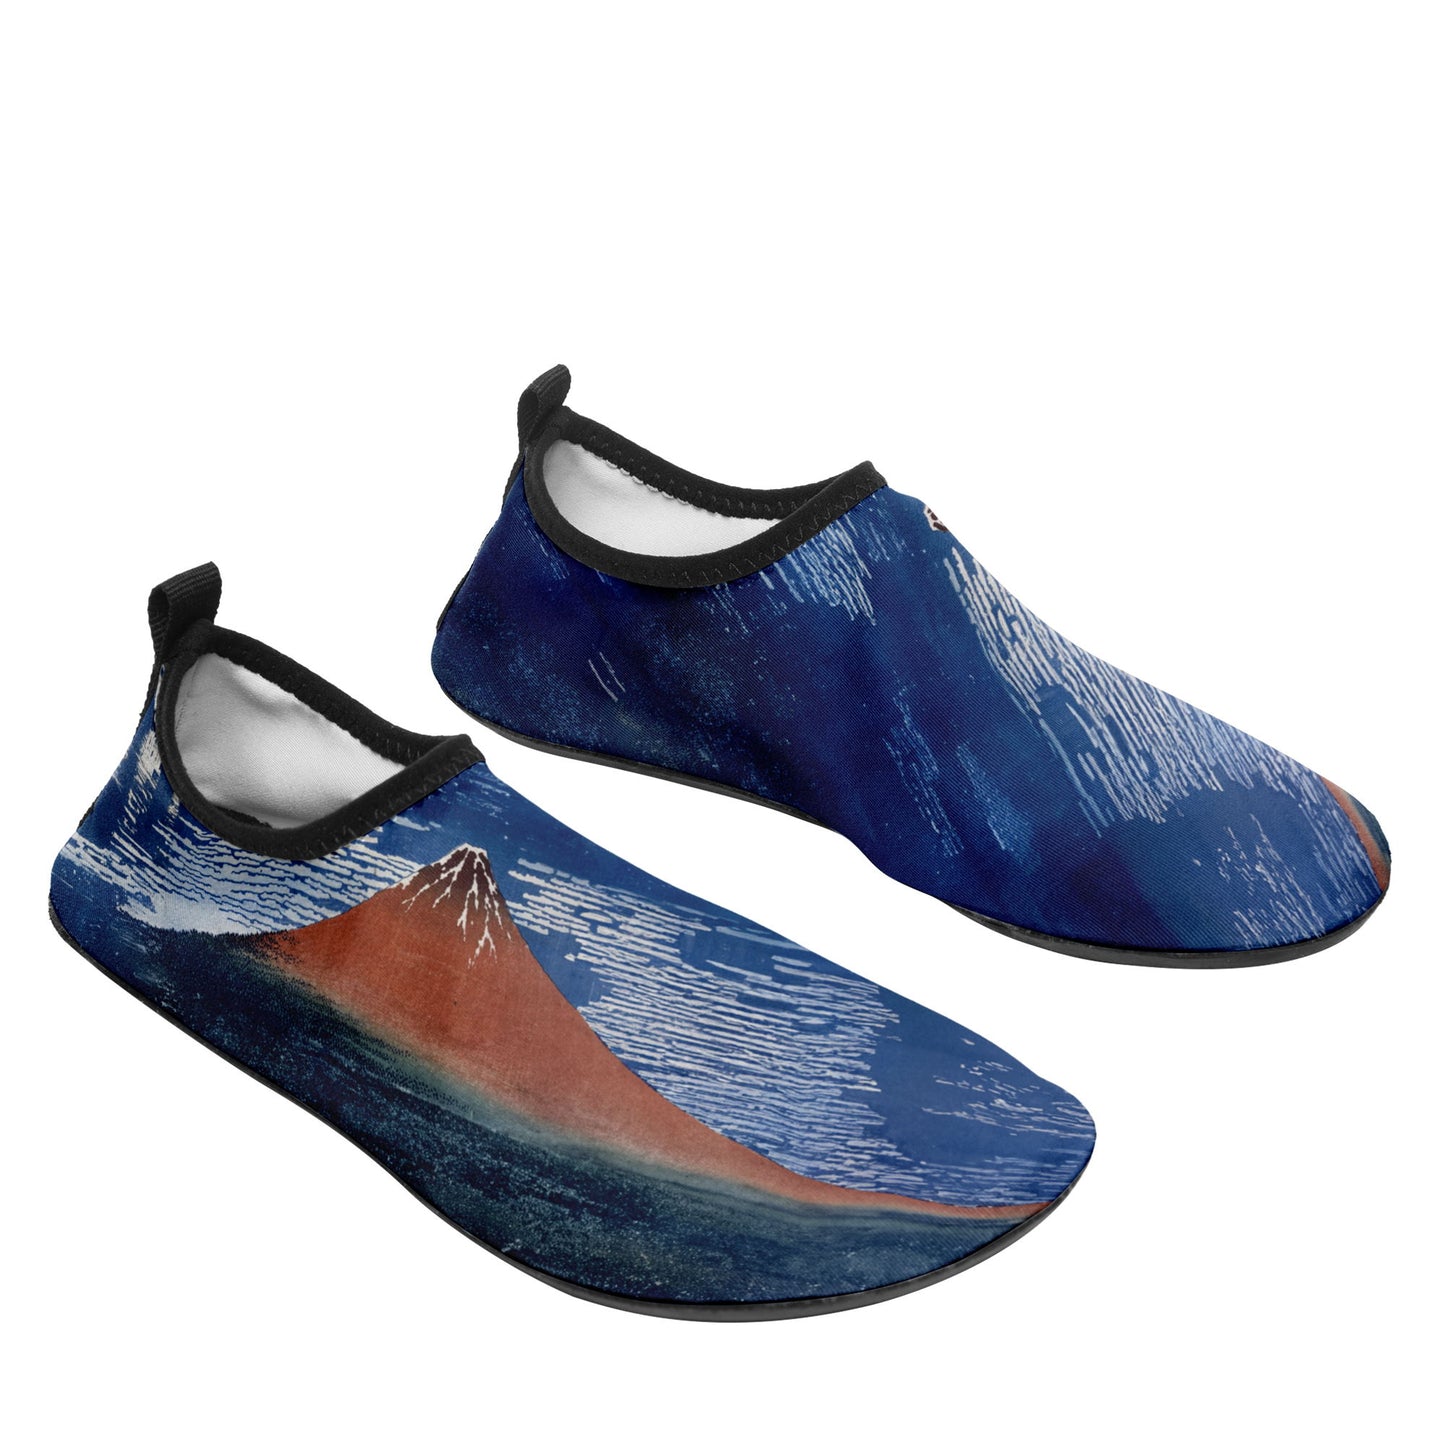 customized printed aqua shoes 1902: ukiyo-e hokusai's thirty six views of mount red fuji beach wading shoes 3